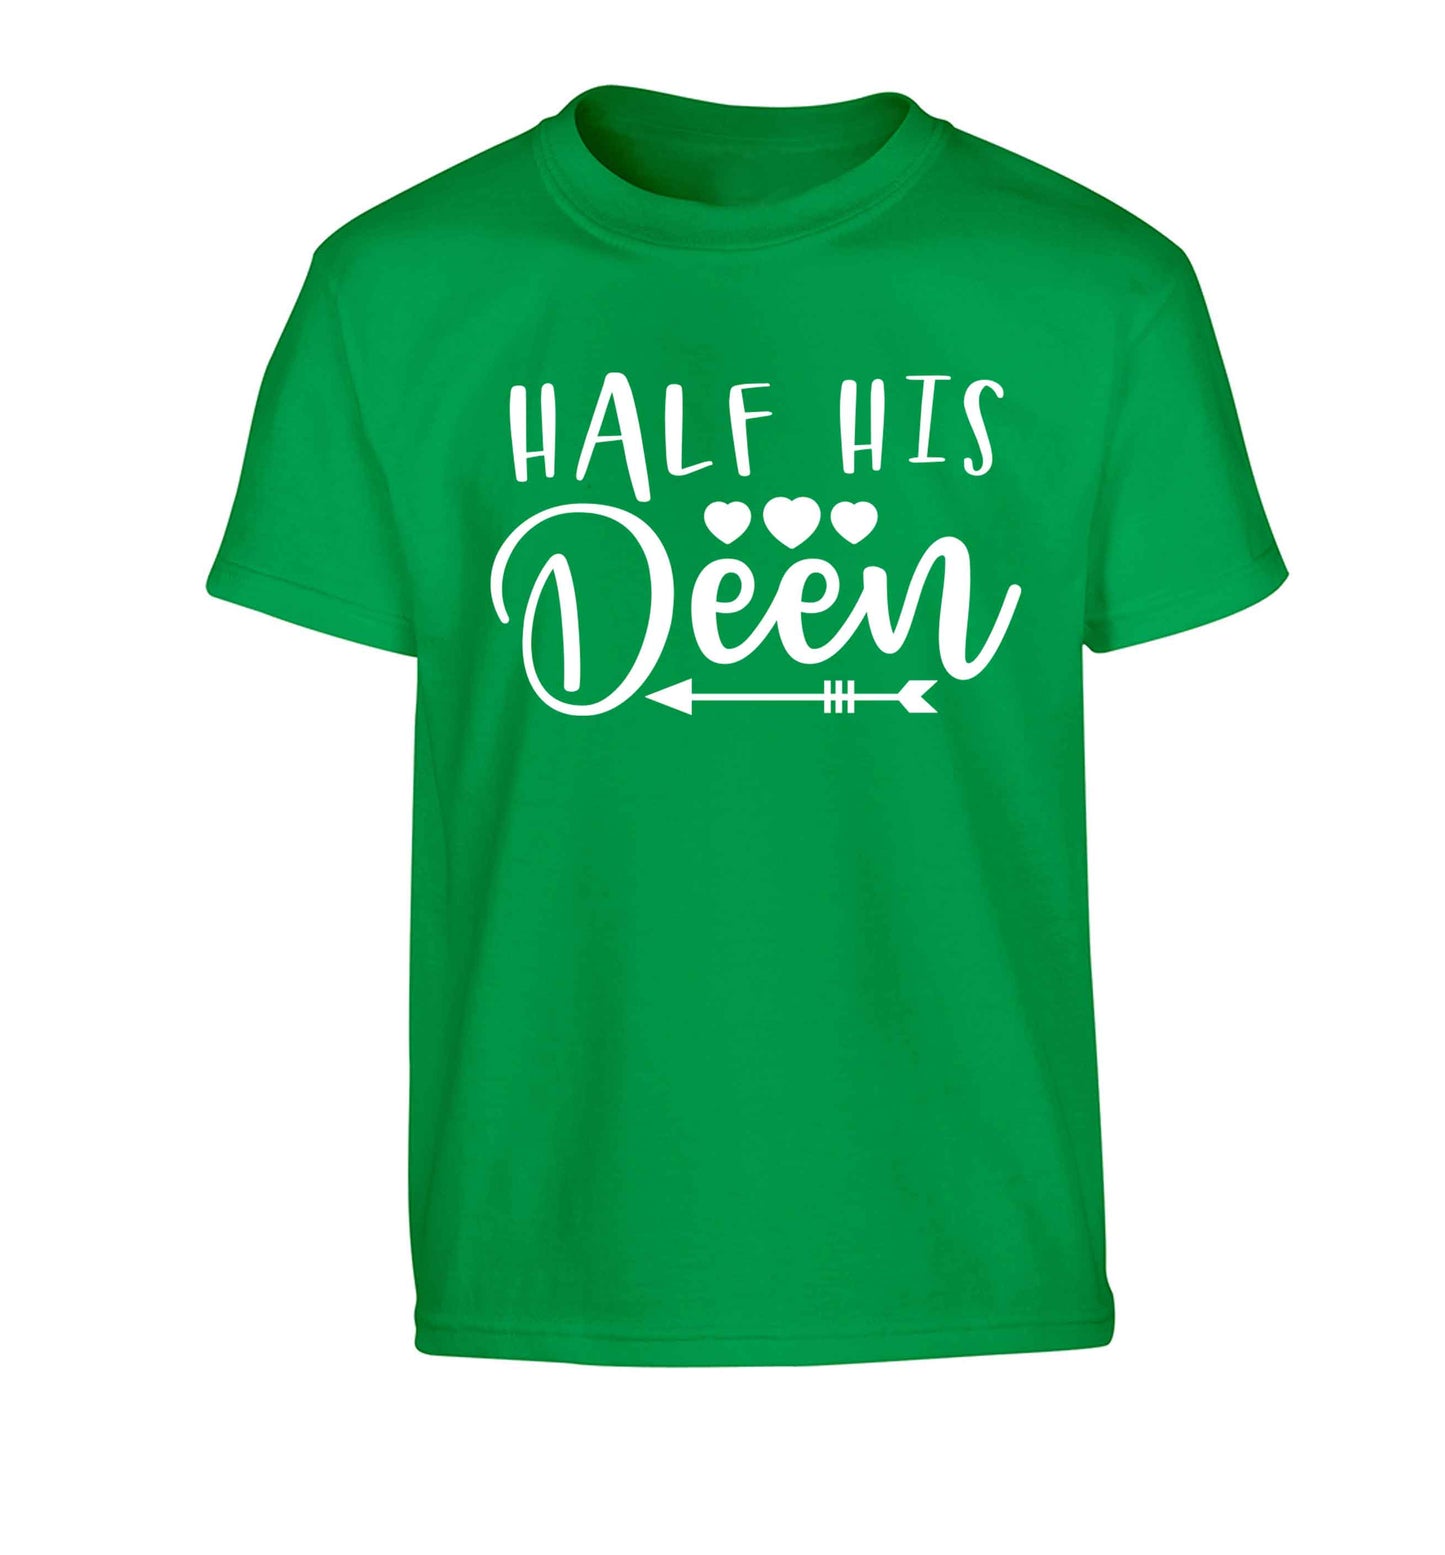 Half his deen Children's green Tshirt 12-13 Years